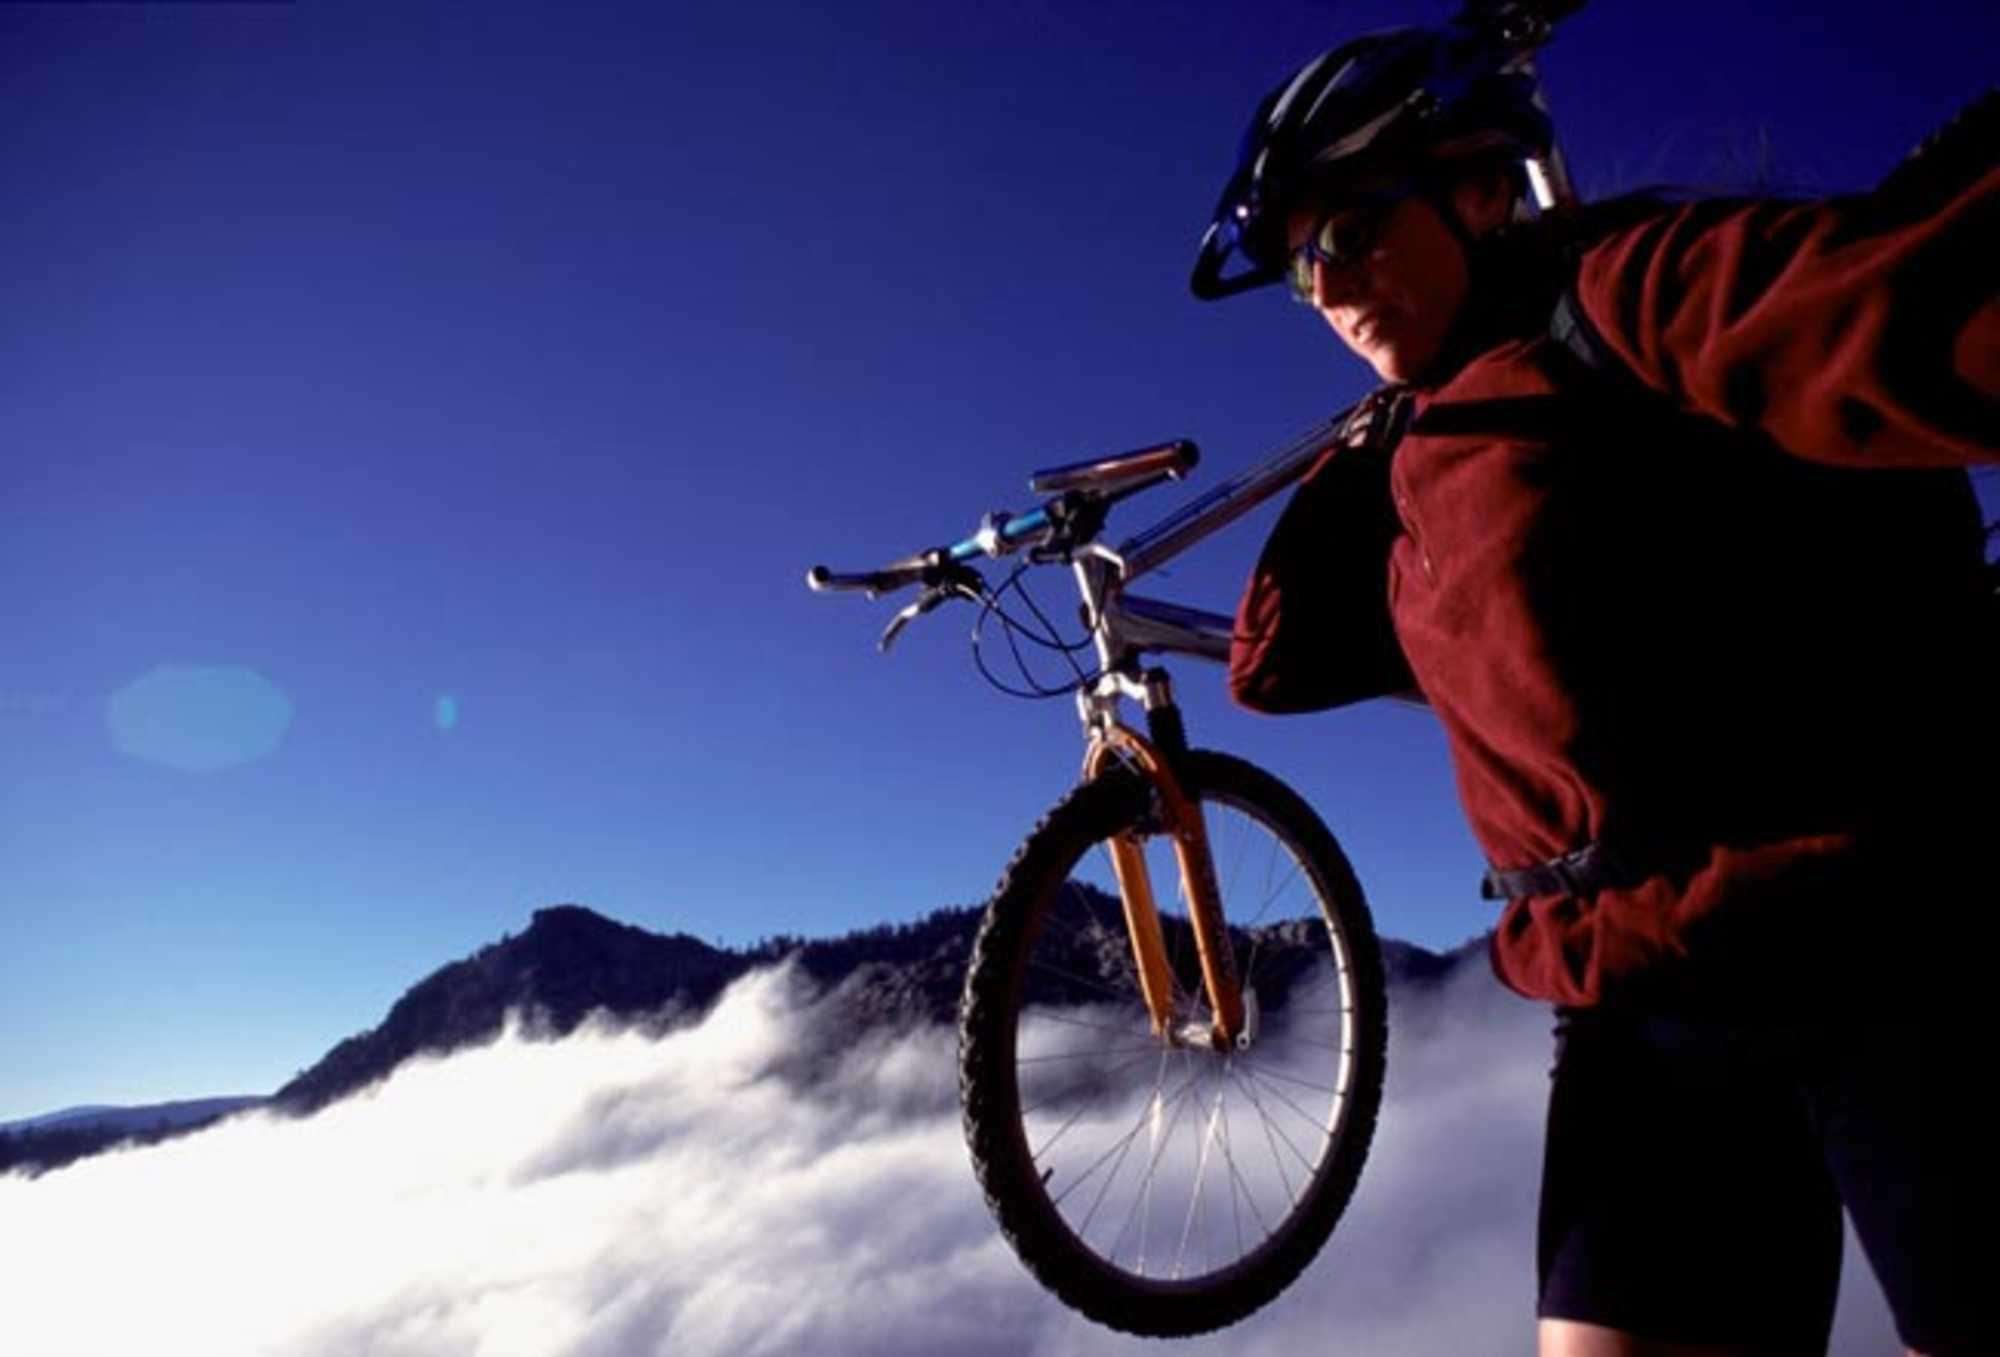 Ropa de de ciclismo y mountain bike para hombre